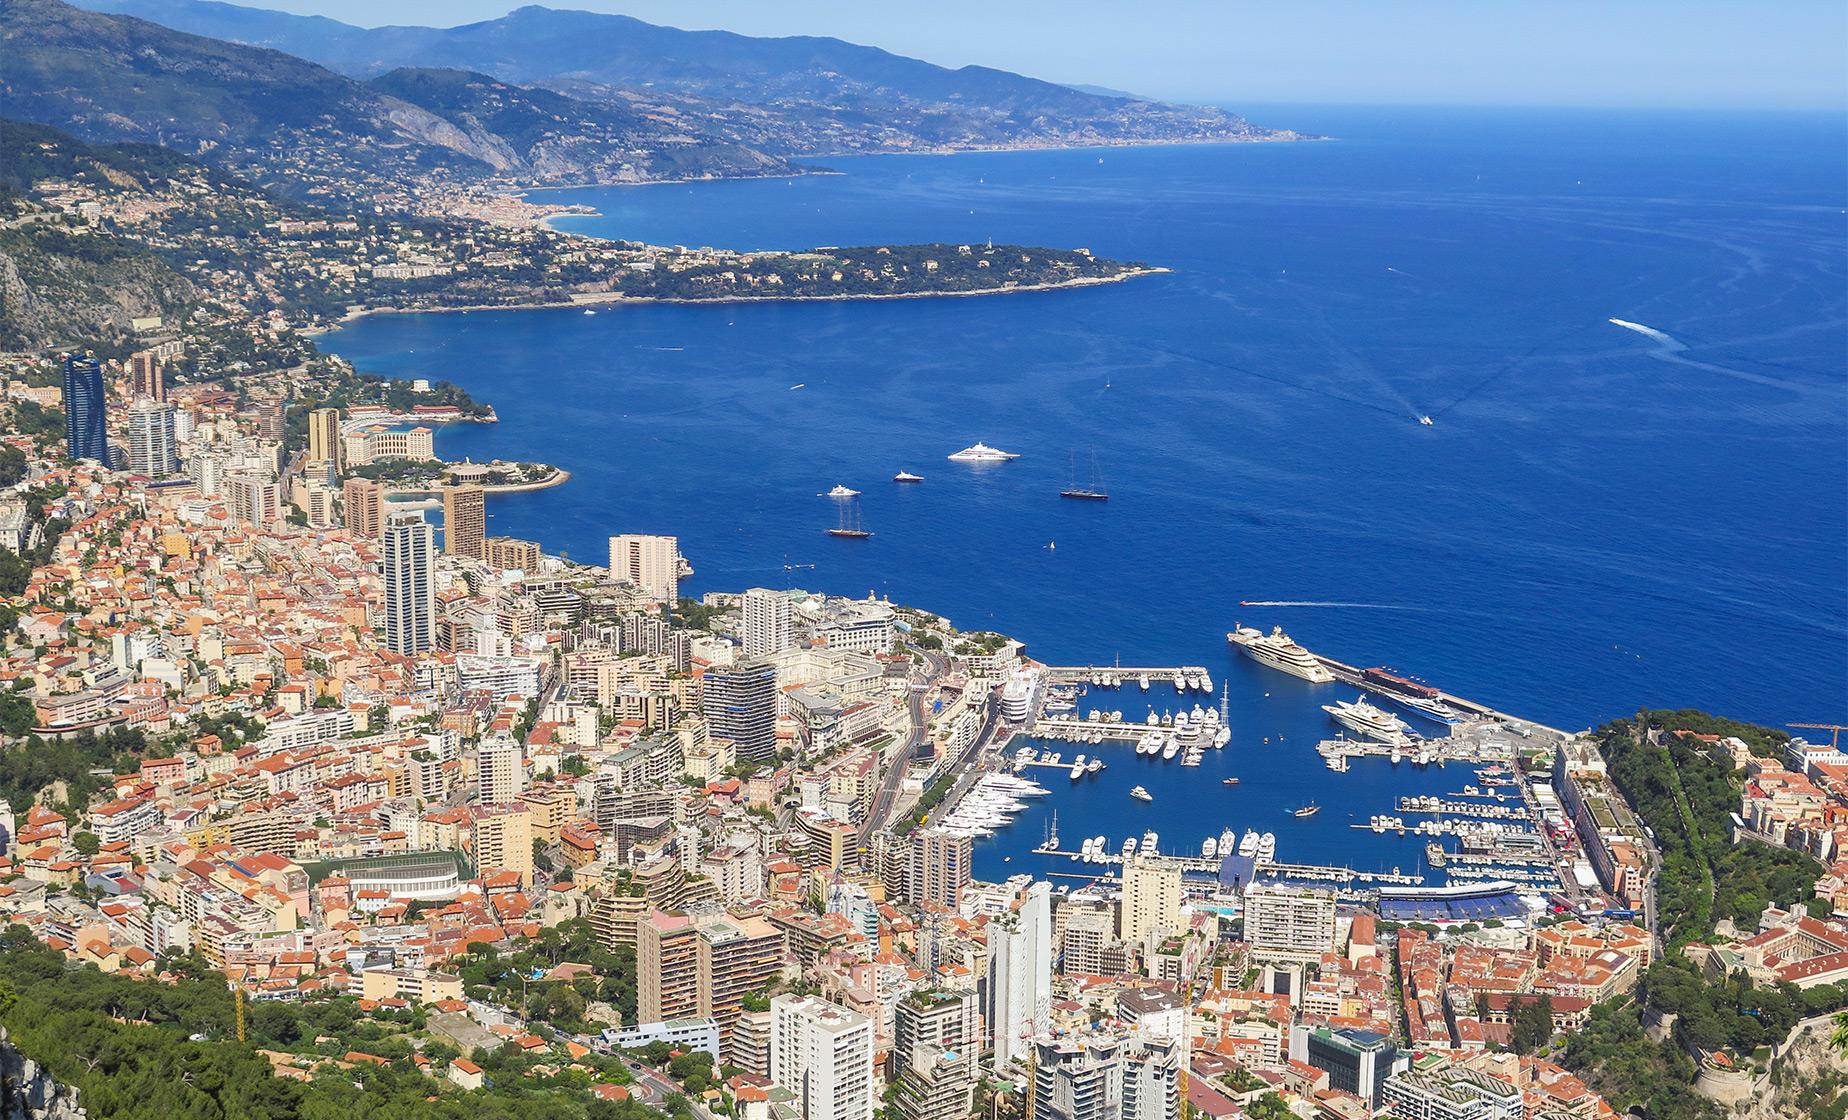 Exclusive Monte Carlo, Eze and La Turbie Tour (French Riviera, Casino Square)